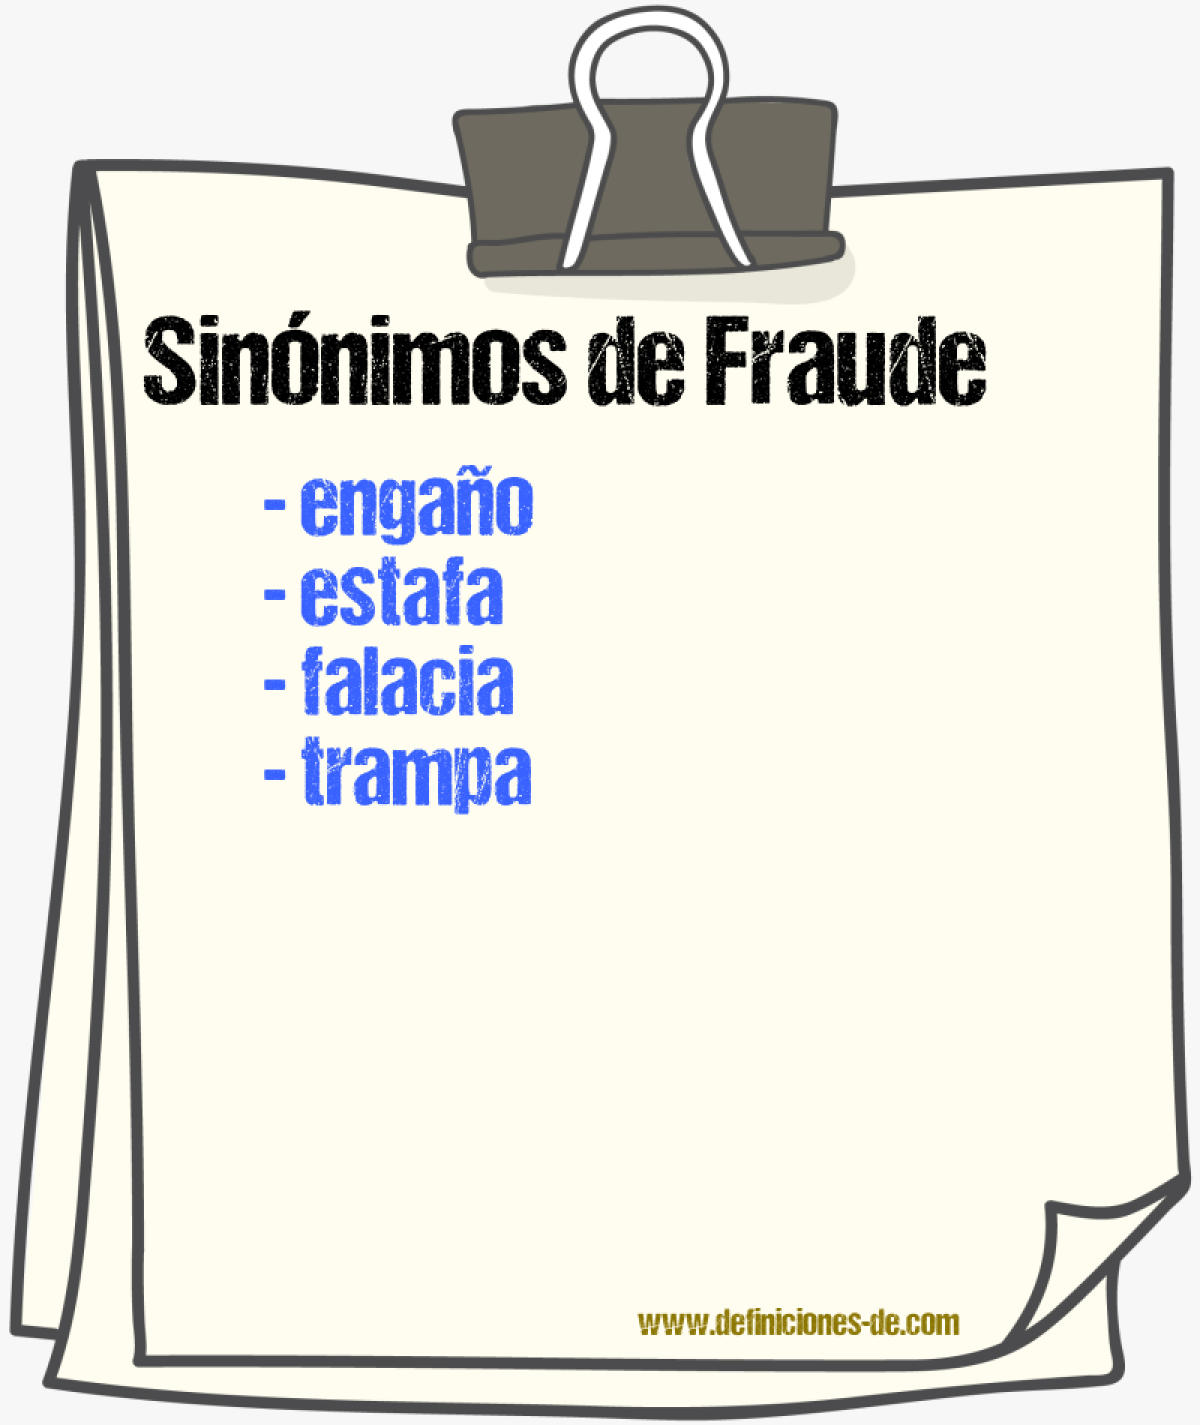 Sinónimos de fraude